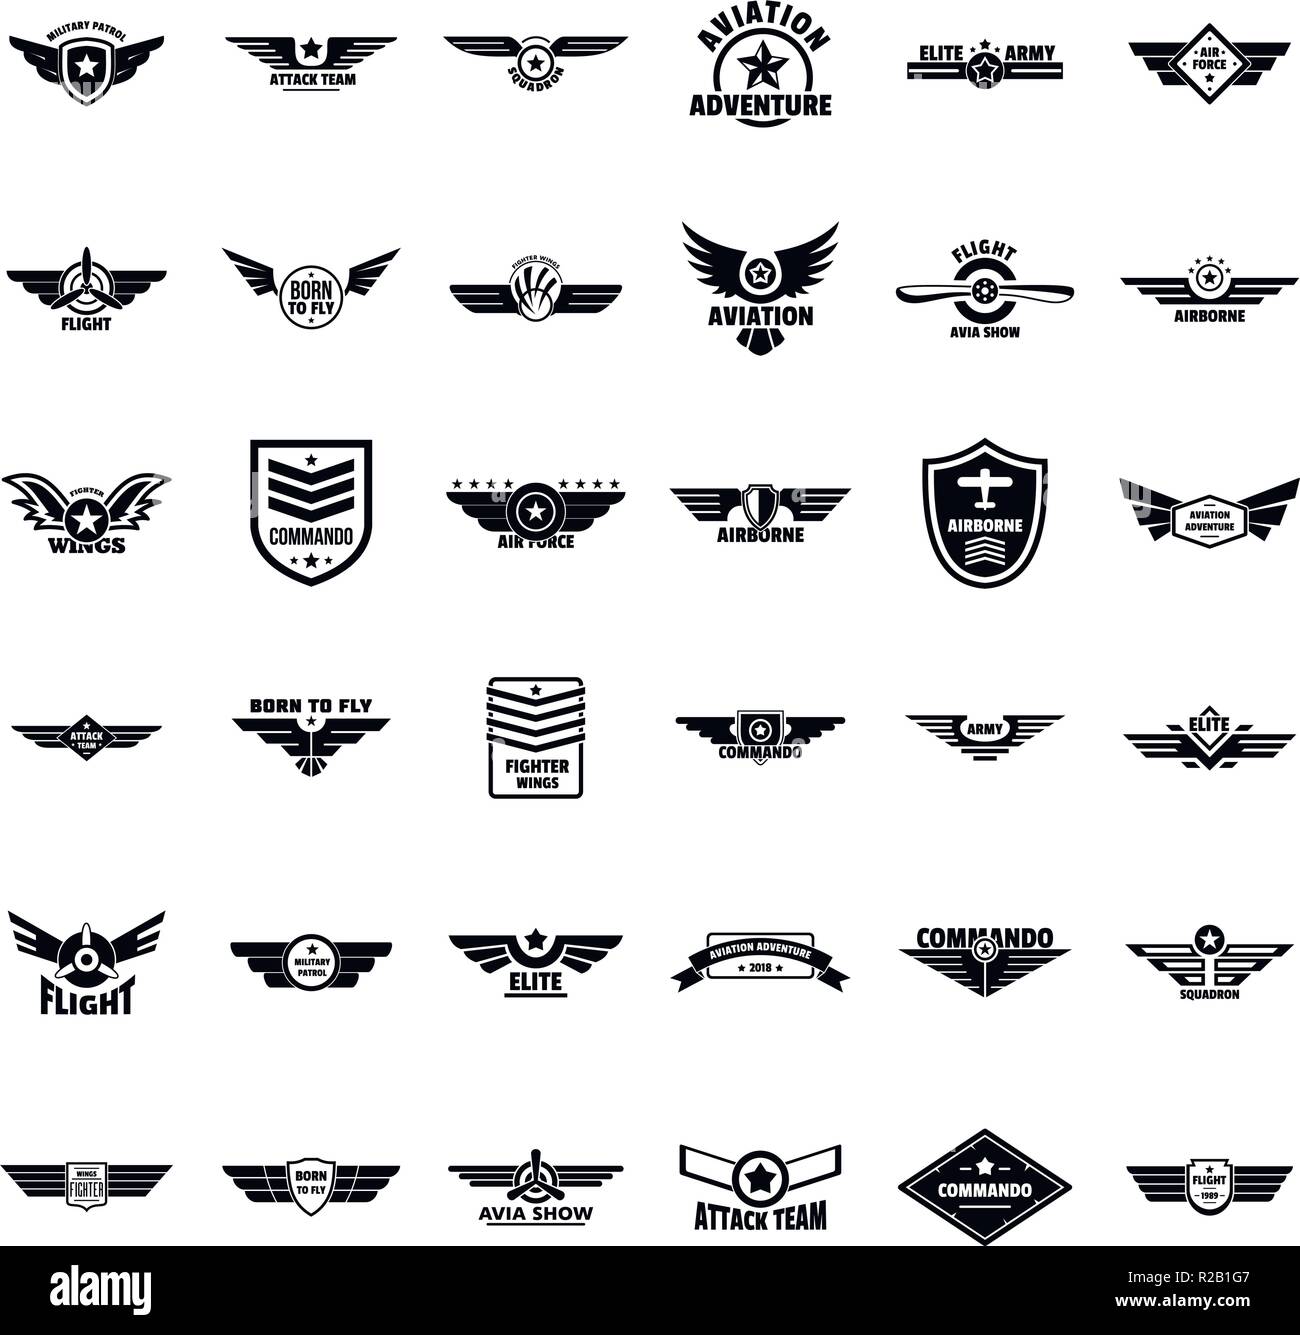 Parches militares. Emblema de soldado del ejército, insignias de tropas y  elementos de diseño de parche insignia de la fuerza aérea o logotipo del  ejército de sellos navy. Vector de insignia de